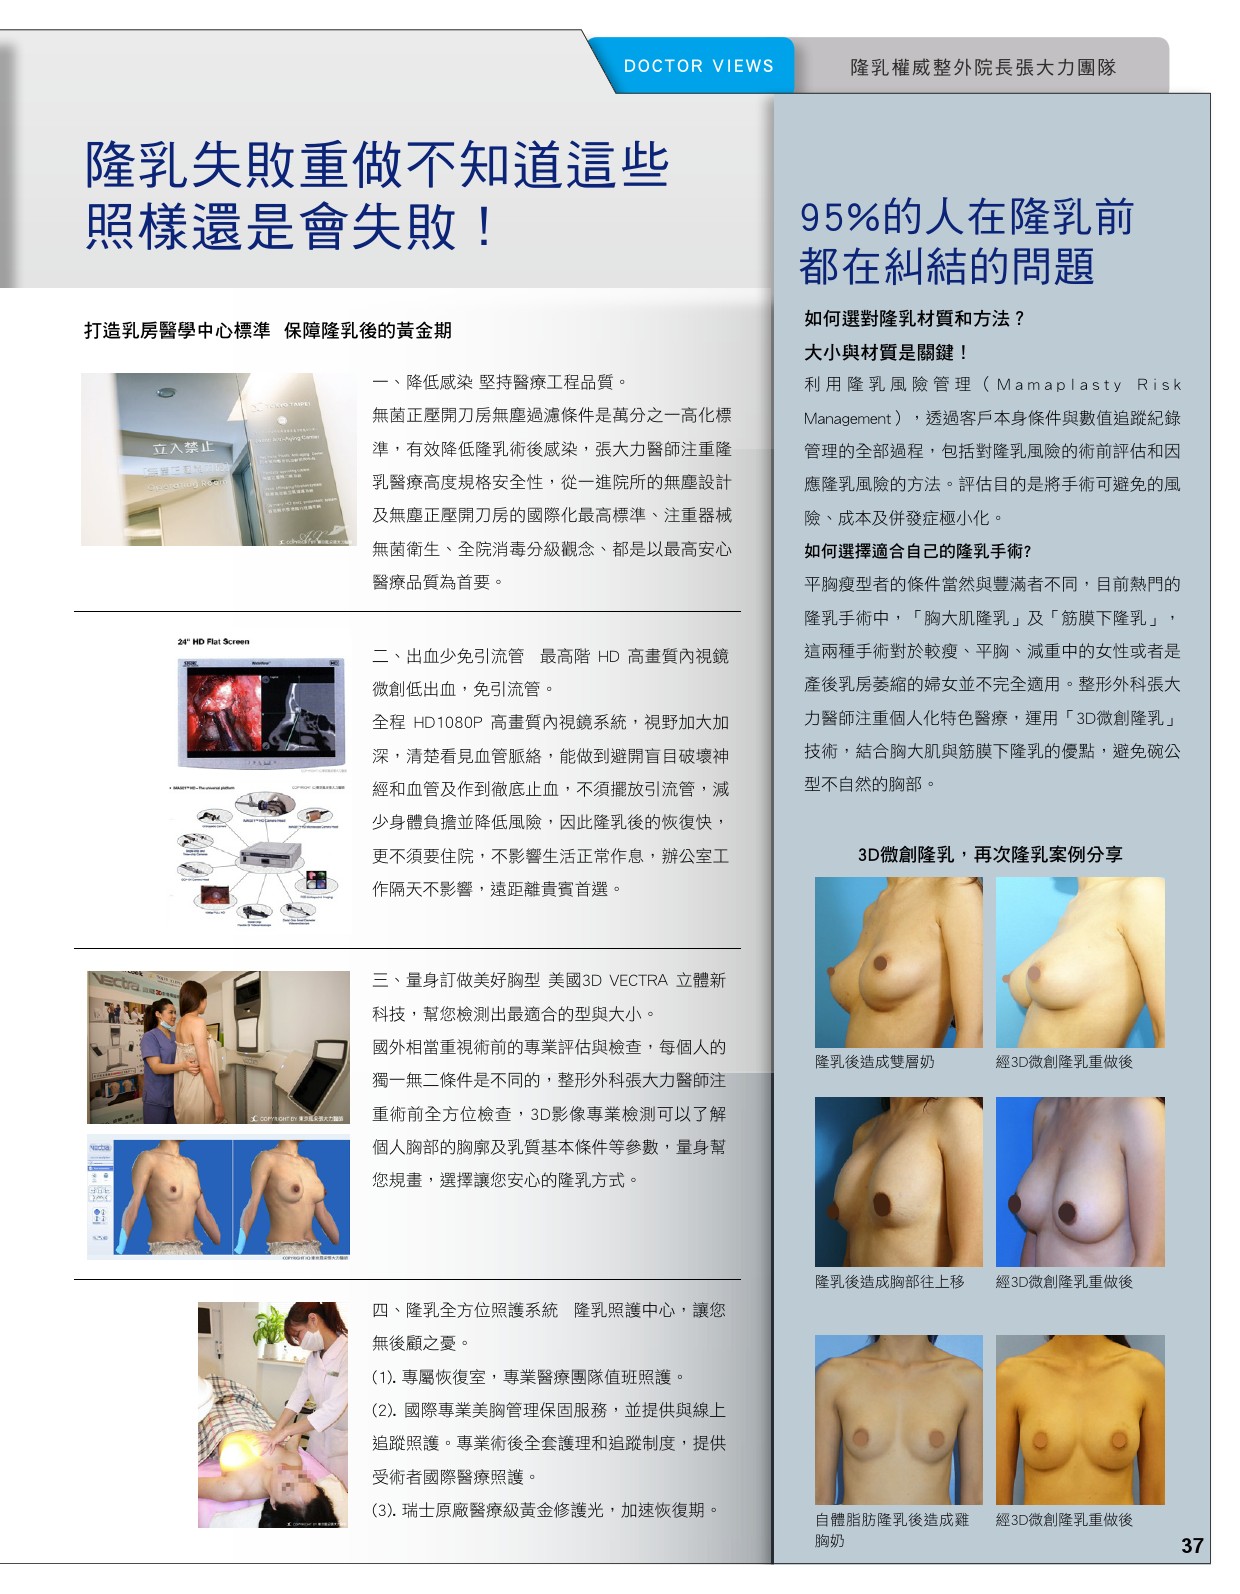 3D微創隆乳 還妳自信美麗的傲人曲線-雜誌專訪-張大力-整形名醫-東京風采